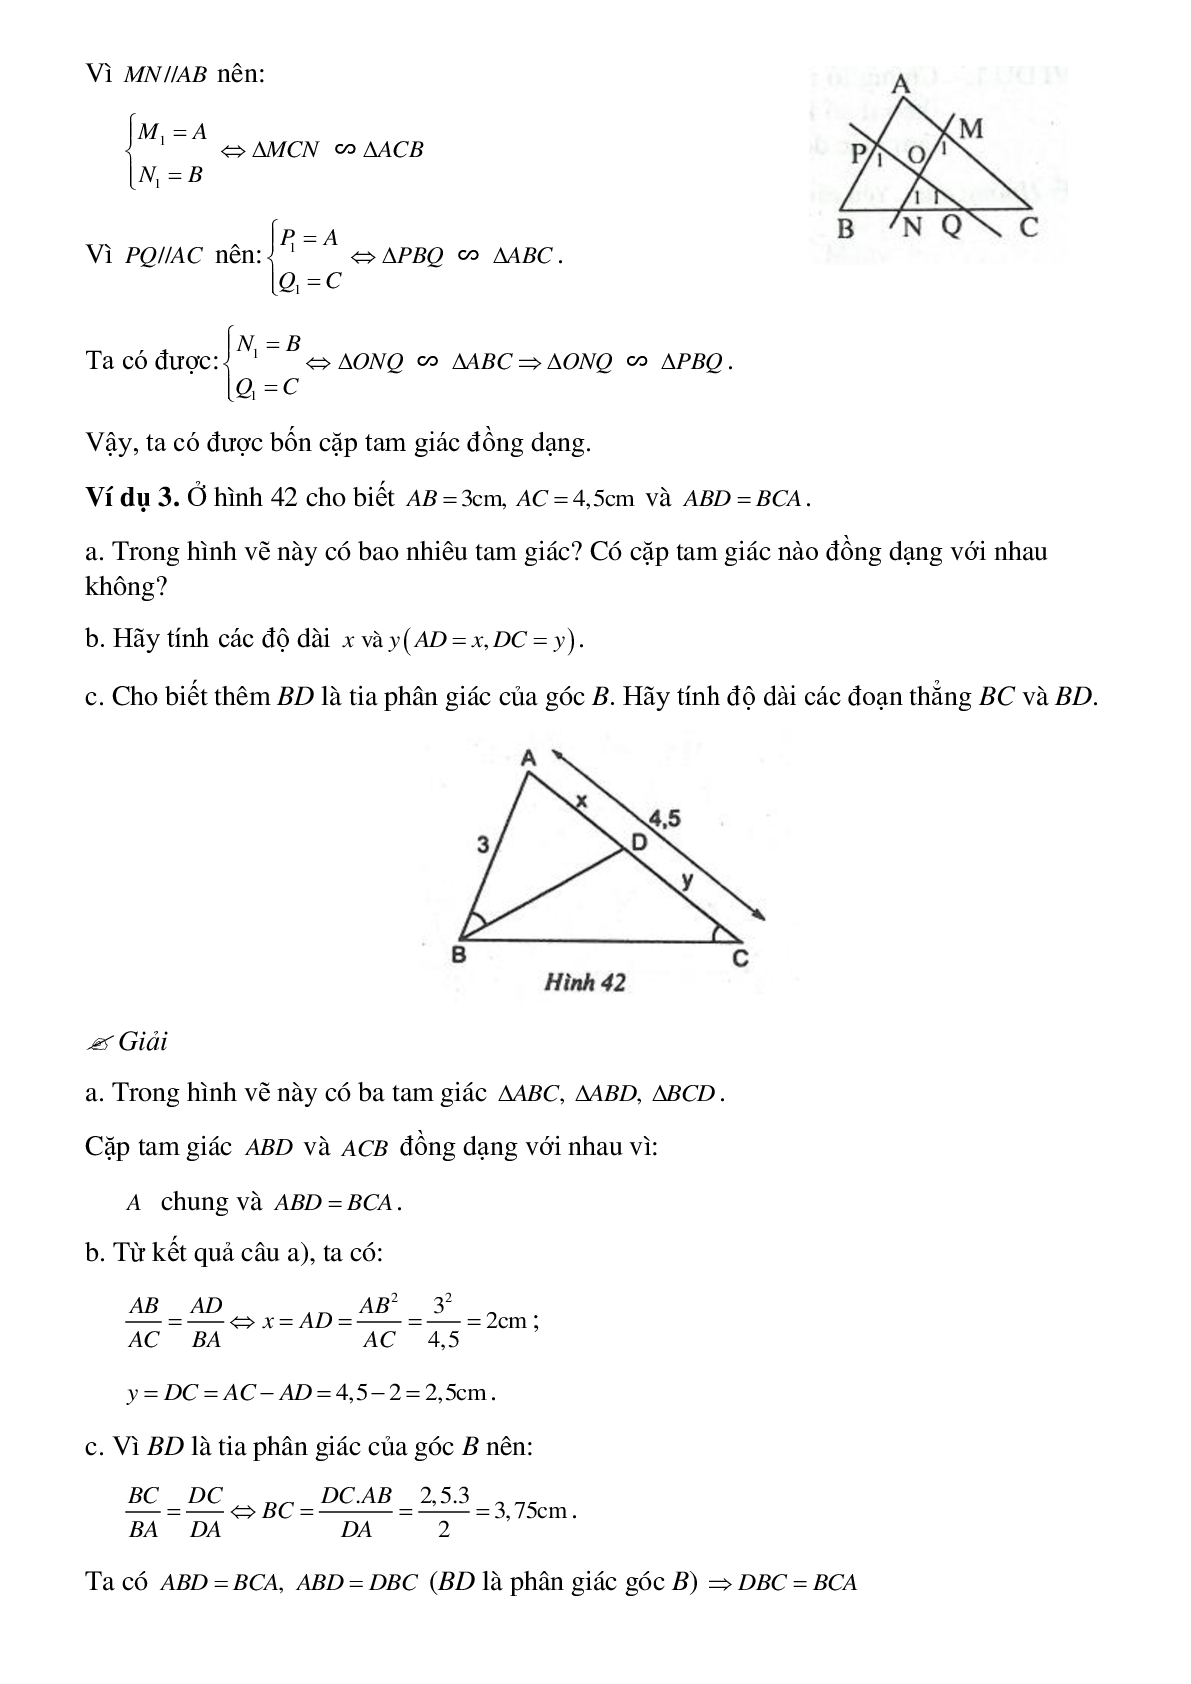 Phương pháp giải cụ thể, bài bác tập dượt về Chứng minh nhị tam giác đồng dạng tinh lọc (trang 6)